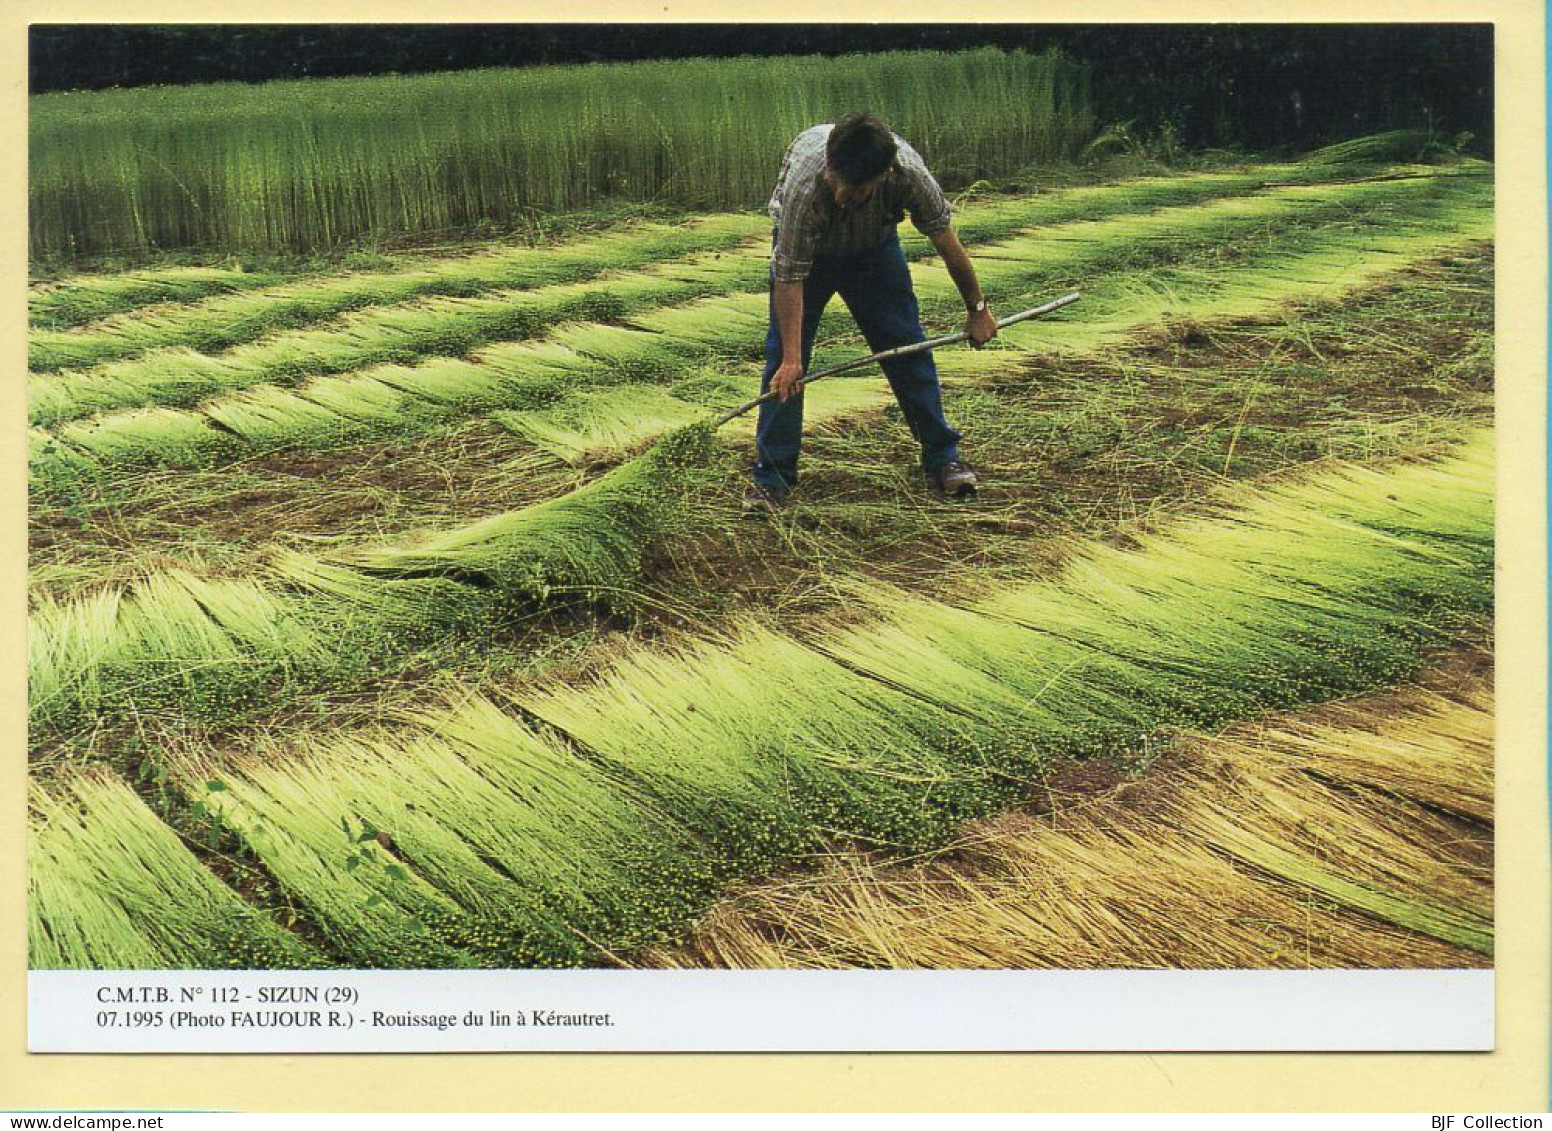 Rouissage Du Lin à Kérautret / SIZUN (29) (FAUJOUR R.) C.M.T.B. N° 112 / 400 Exemplaires (CARTOUEST) - Farmers